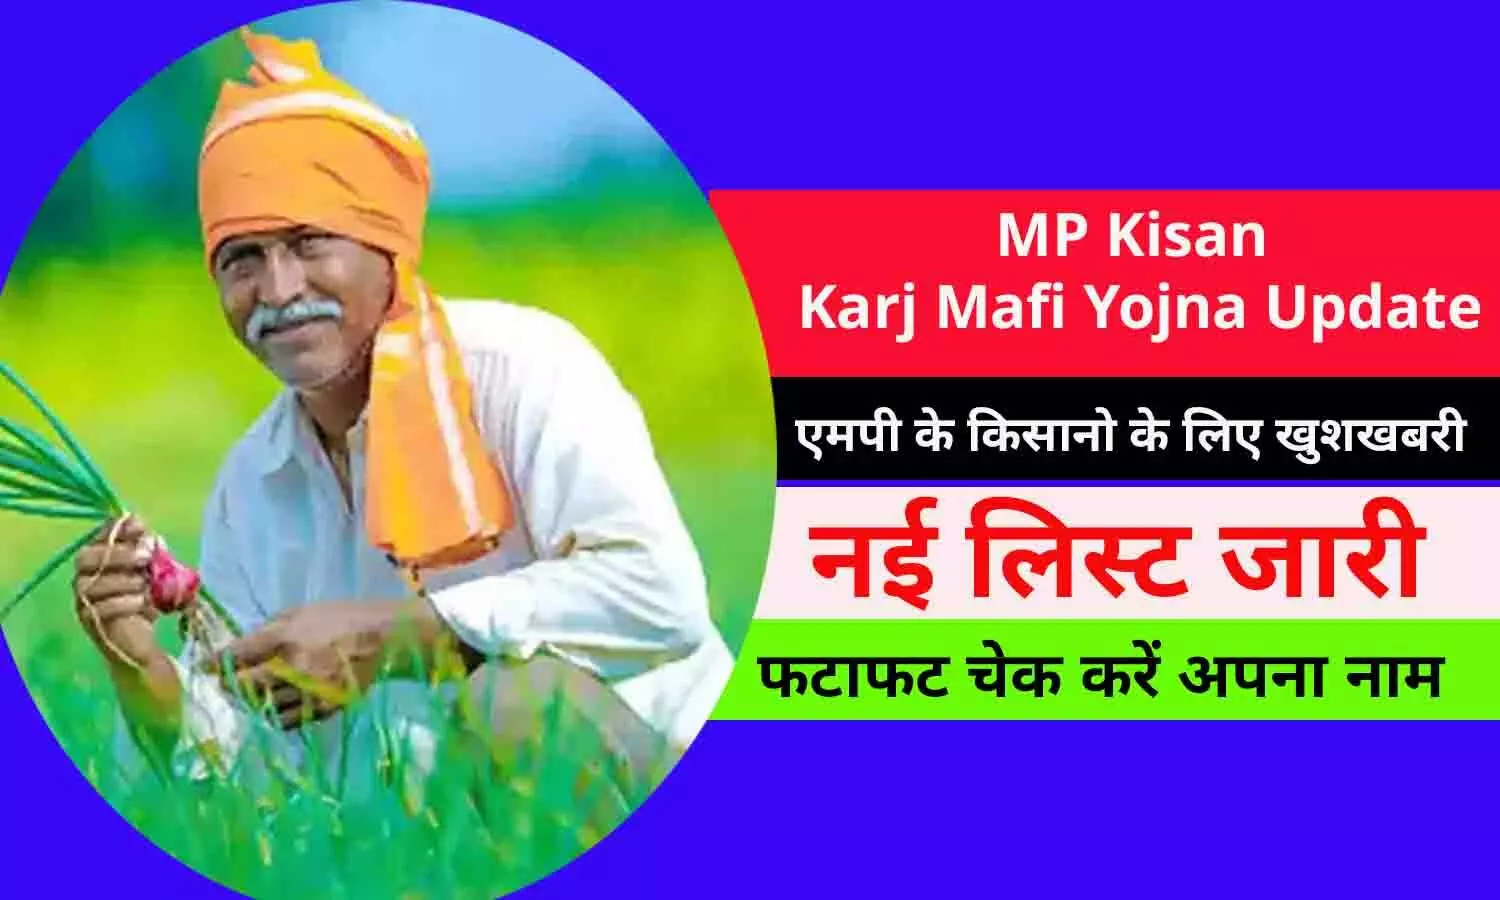 MP Kisan Karj Mafi Yojna Update In Hindi: एमपी के किसानो के लिए खुशखबरी! नई लिस्ट जारी, फटाफट चेक करें अपना नाम